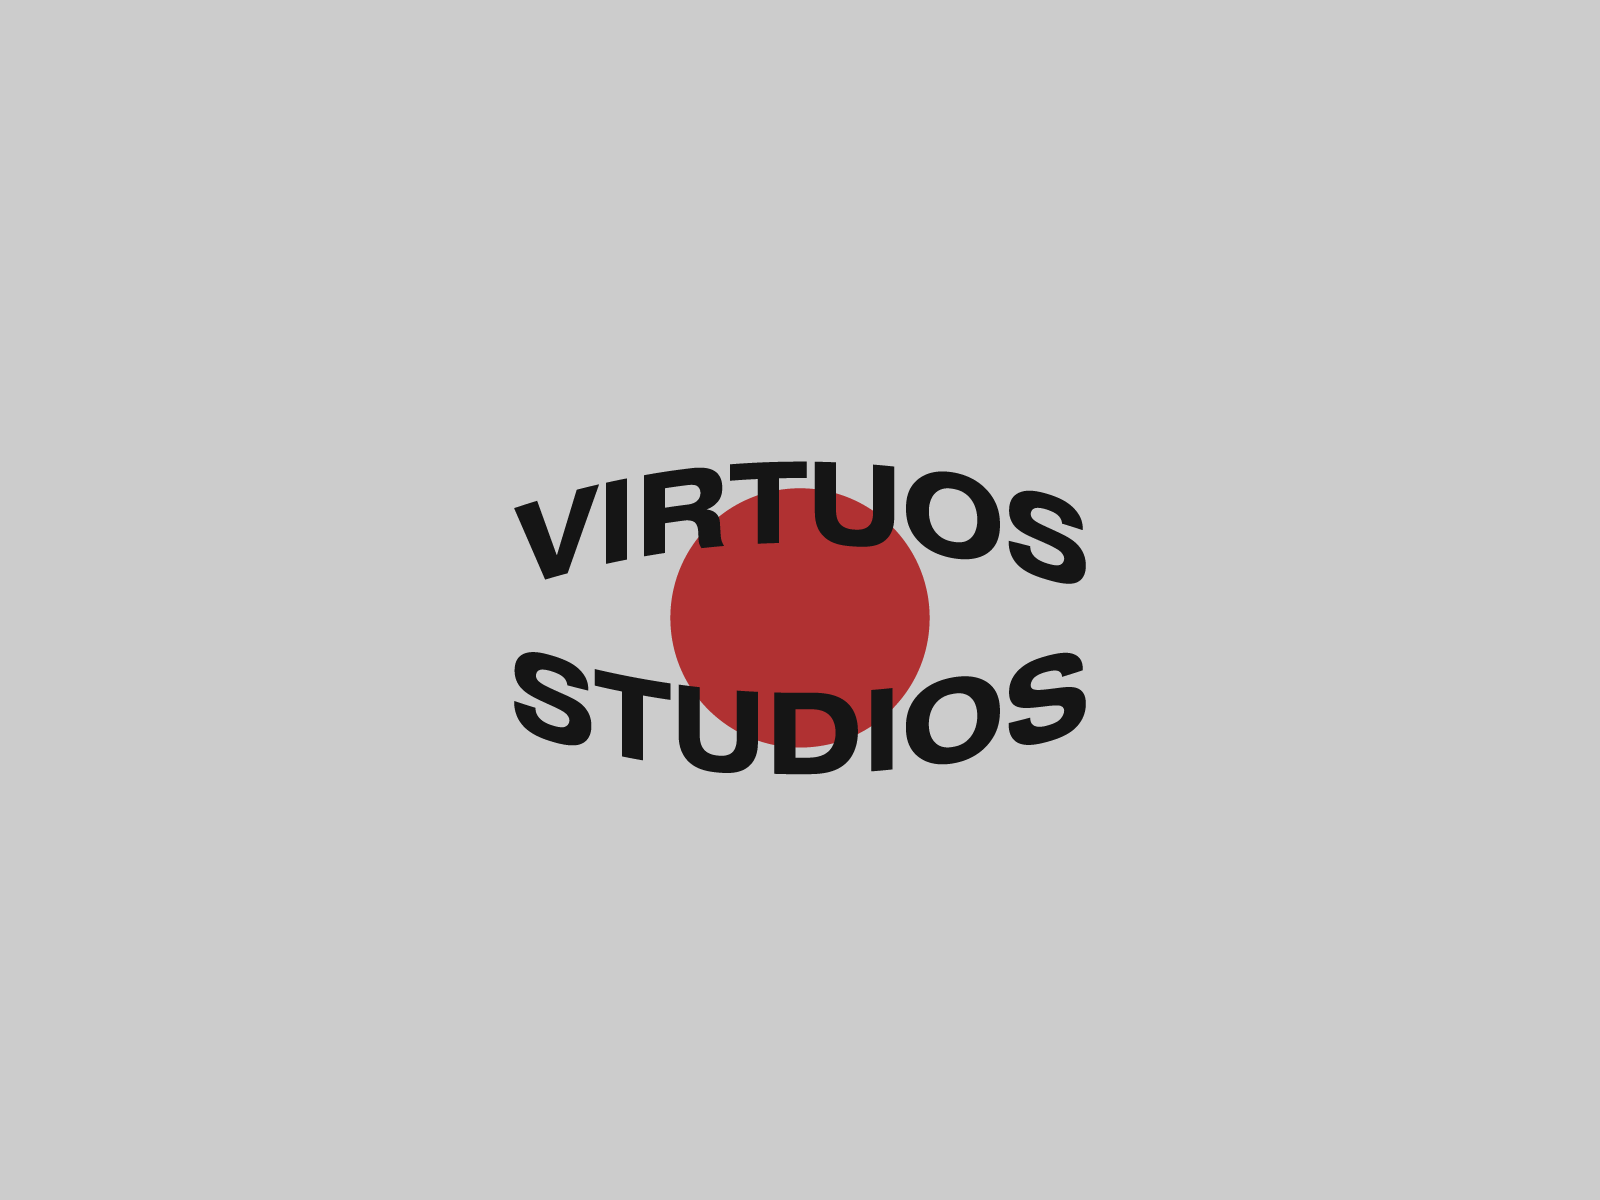 Virtuos Studios Logotype